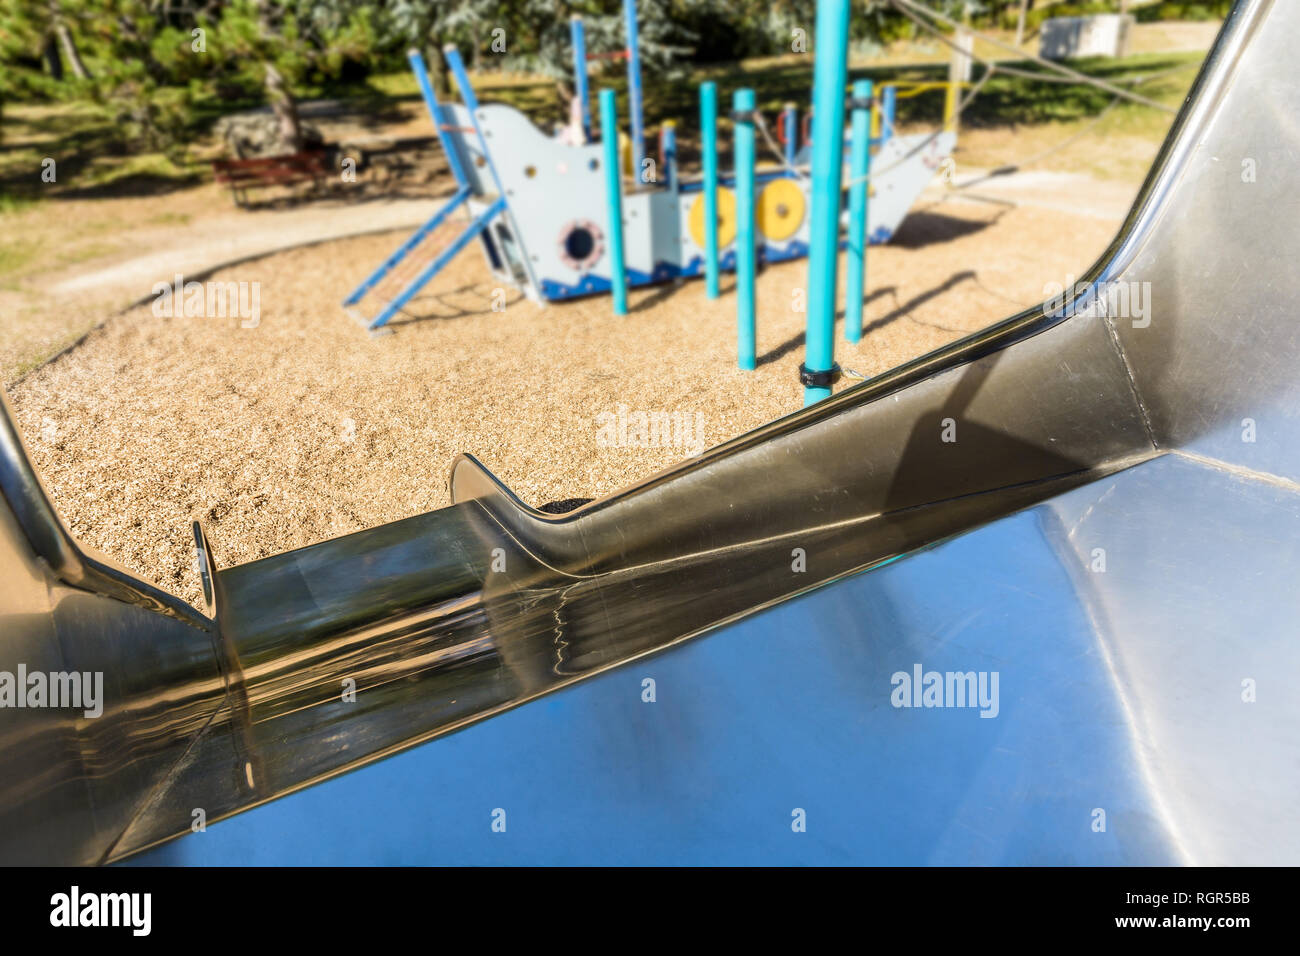 Première personne vue depuis le haut d'une aire de jeux en acier inoxydable diapositive d'une aire de jeux pour enfants avec un bateau pirate dans l'arrière-plan. Banque D'Images